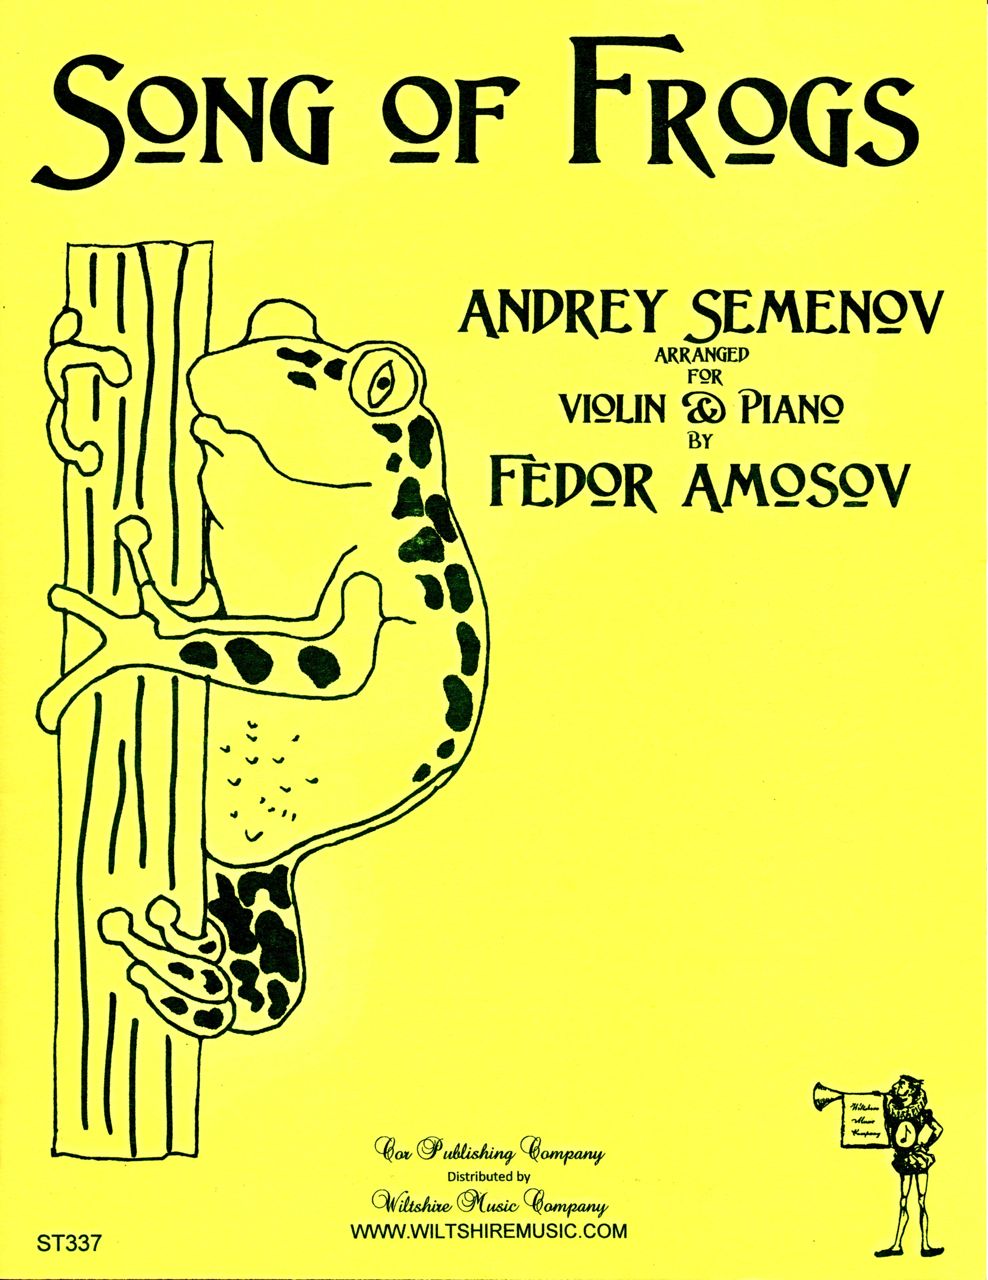 Song of Frogs, Andrey Semenov, arr. Fedor Amosov, violin & piano